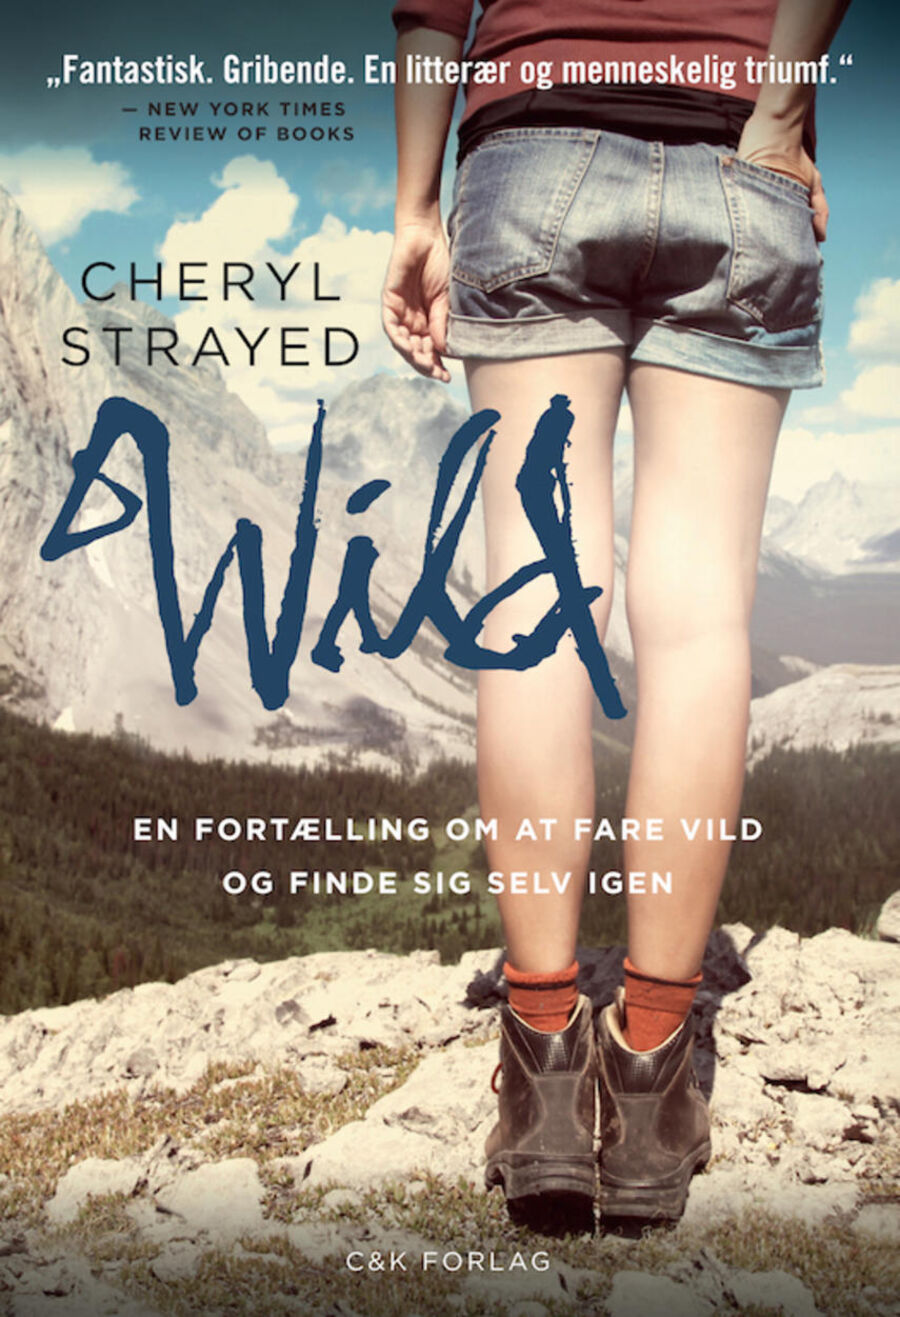 Forsidebillede af bogen "Wild : en fortælling om at fare vild og finde sig selv igen"